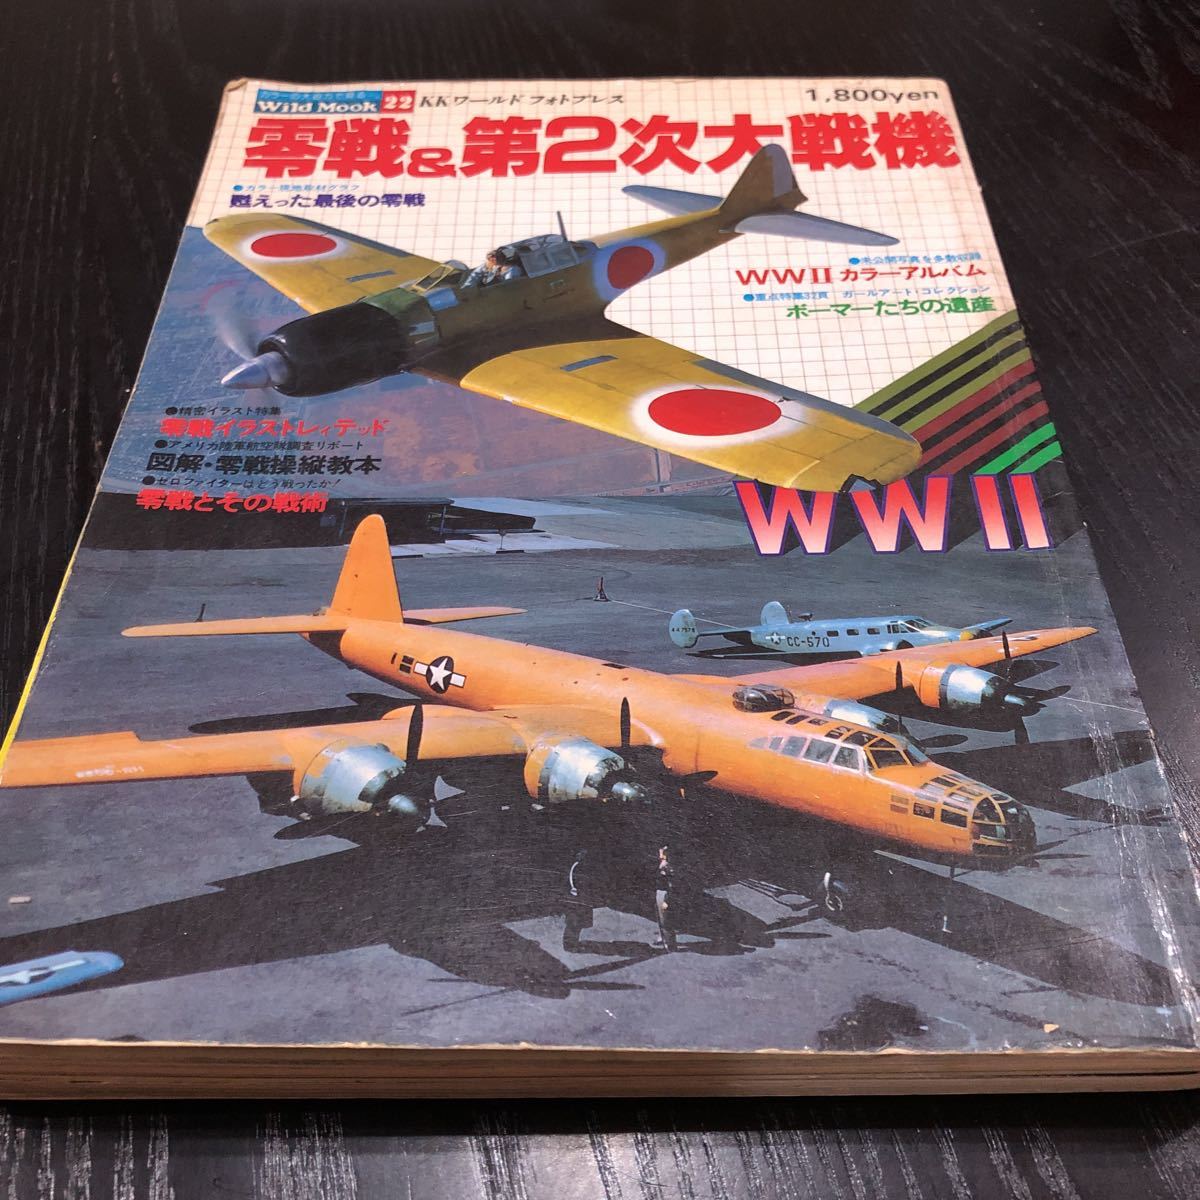 イ80 零戦&第2次大戦機 ワイルドムック22 昭和53年9月発行 海軍機 モデルアート 水上機 日本海軍 飛行機模型 最終兵器 戦争 ジェット機_画像1